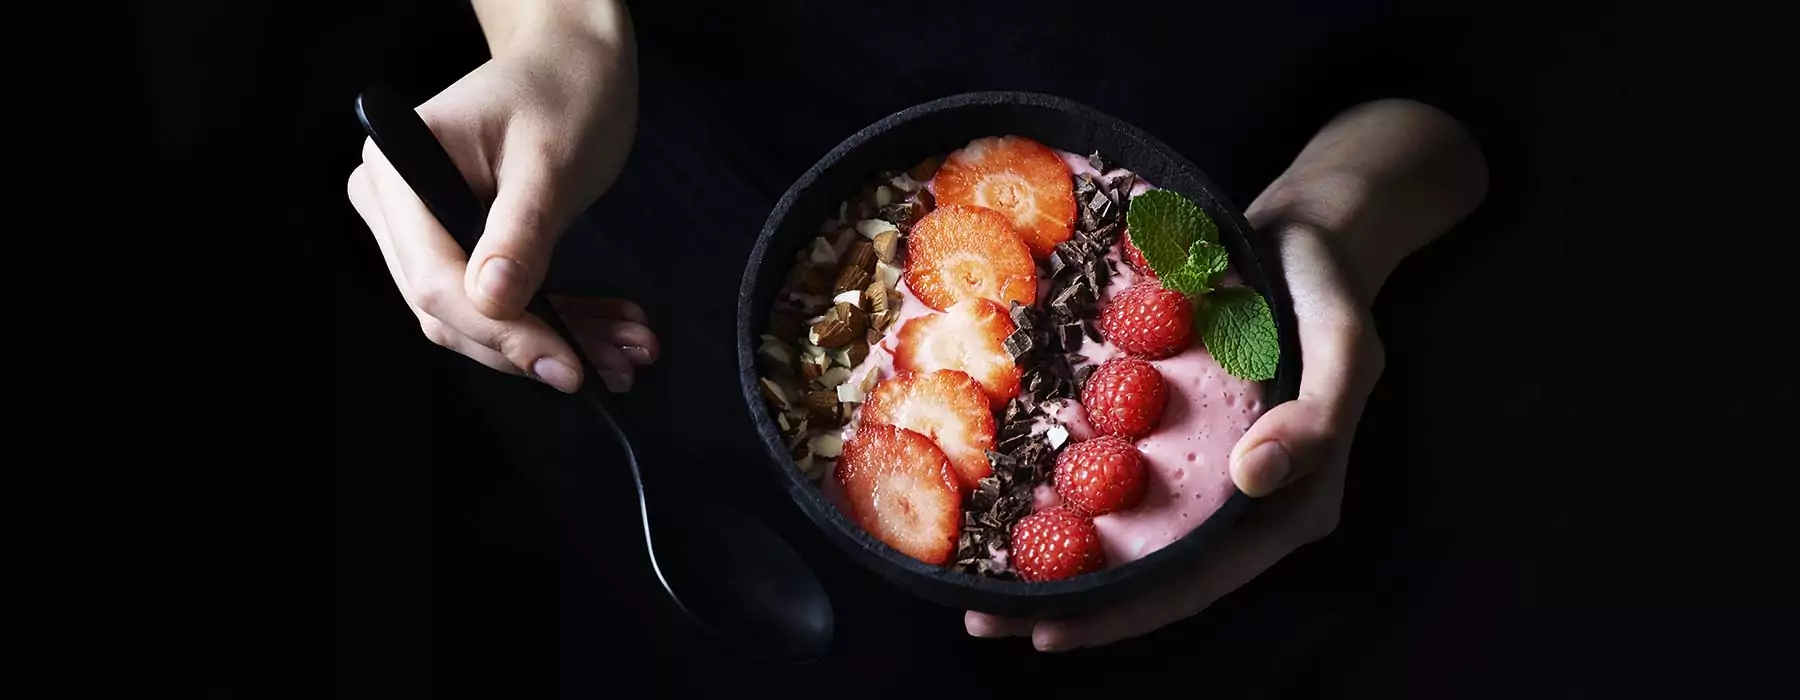 Dansk sommer-smoothiebowl med røde bær og hyldeblomst